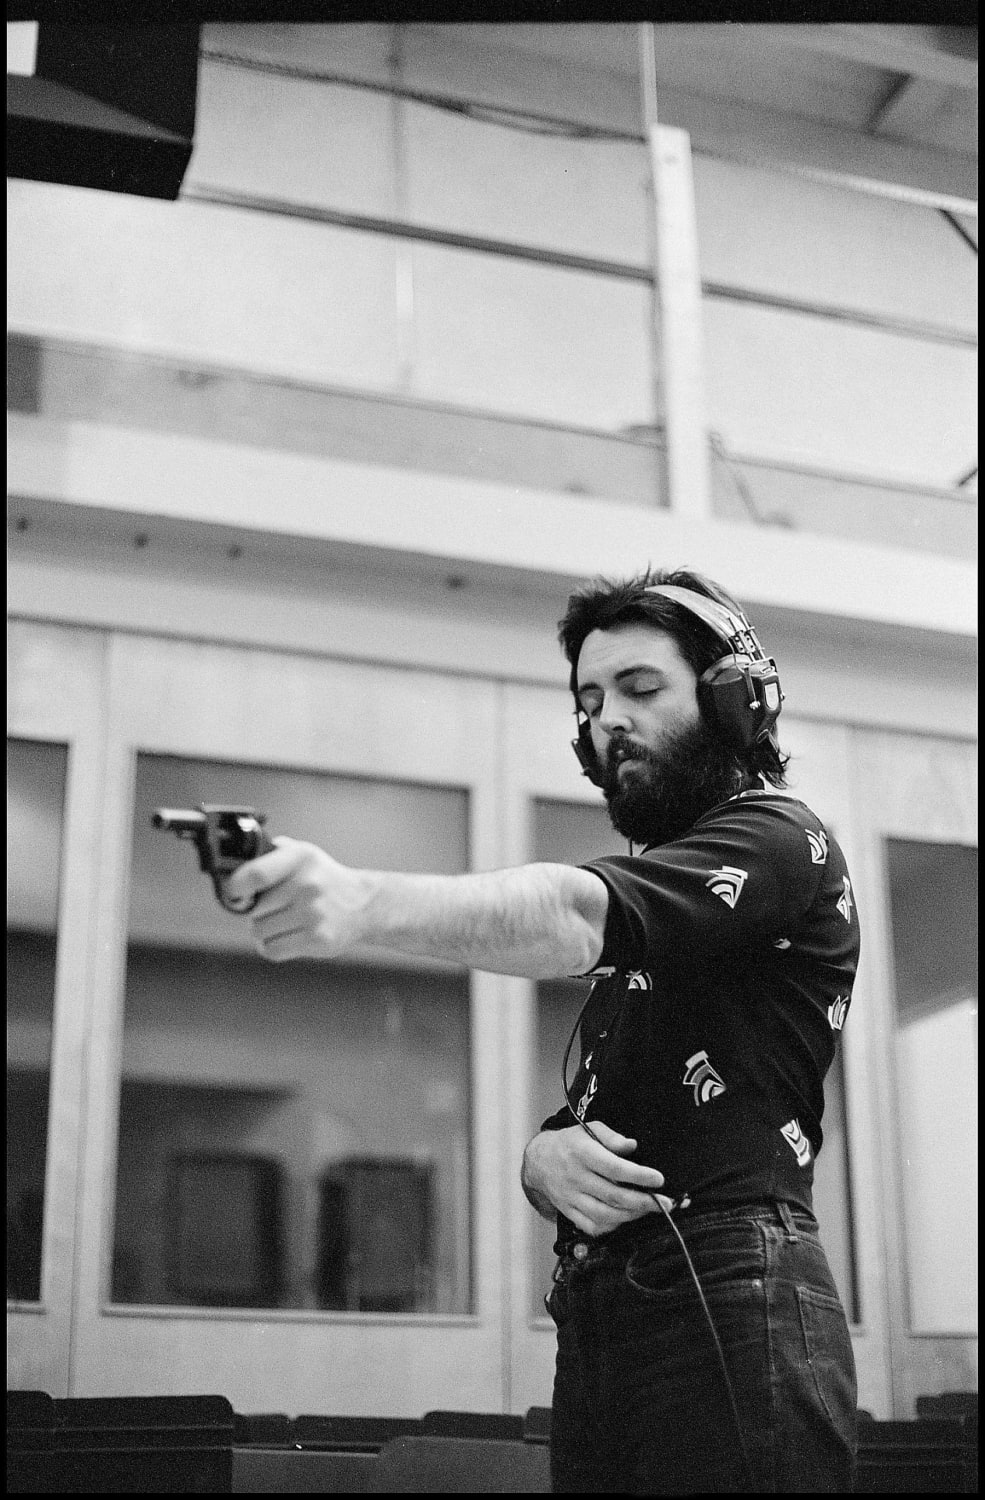 PsBattle: Paul McCartney with a gun